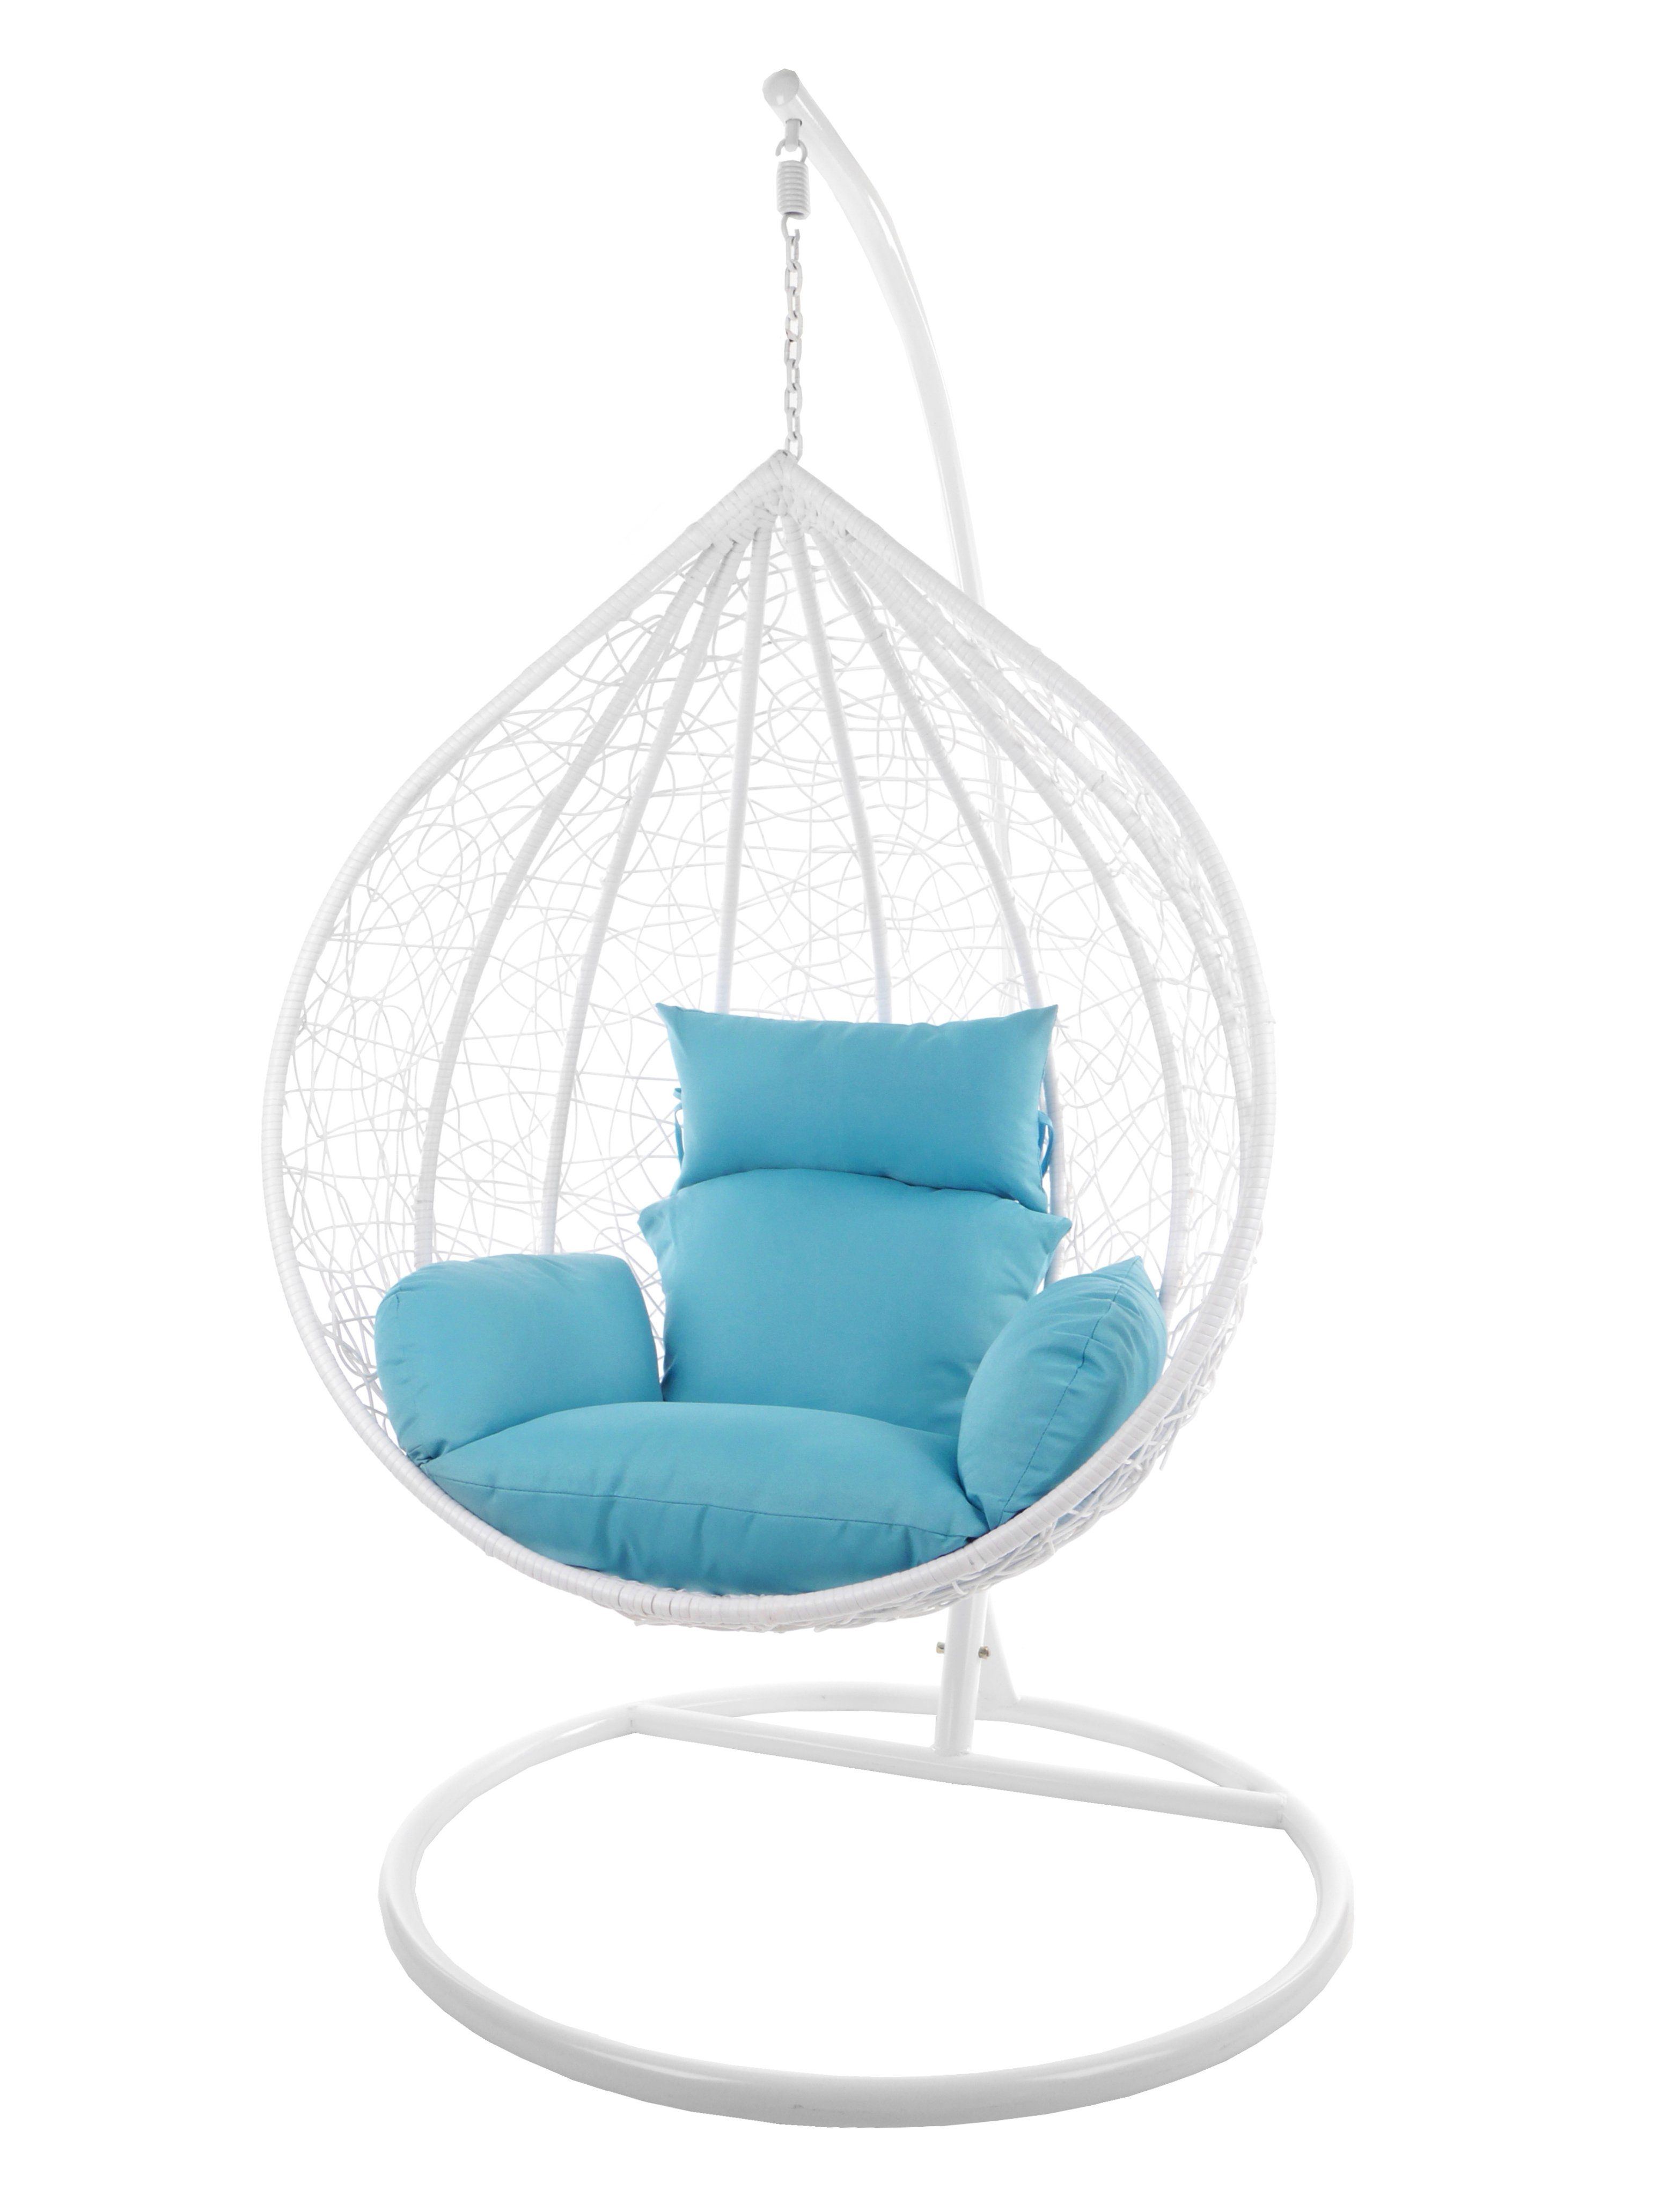 KIDEO mit großer MANACOR (5050 XXL weiß Chair, Loungemöbel, Hängesessel Gestell und Kissen, hellblau Hängesessel skyblue) Hängesessel weiß, Swing